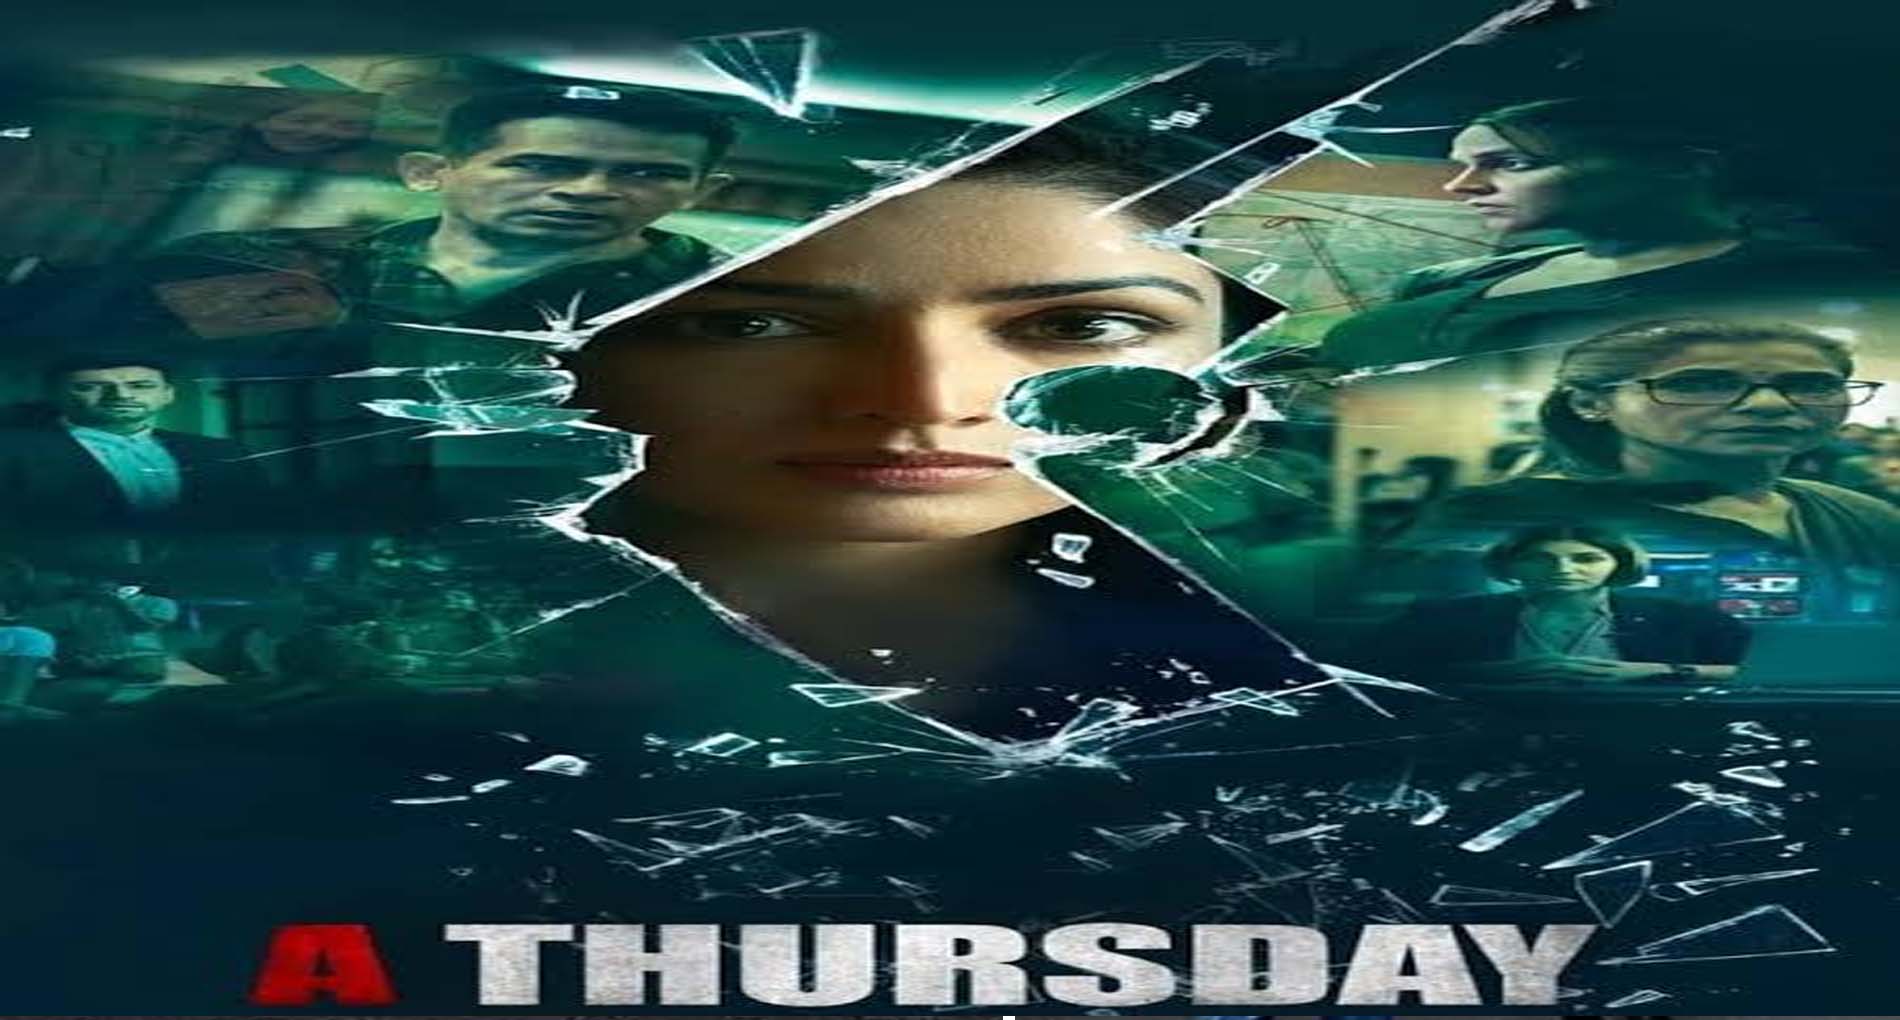 यामी गौतम की फिल्म ‘A Thursday’ का इस दिन होगा वर्ल्ड टेलीविज़न प्रीमियर, OTT पर मचाई है जमकर धूम